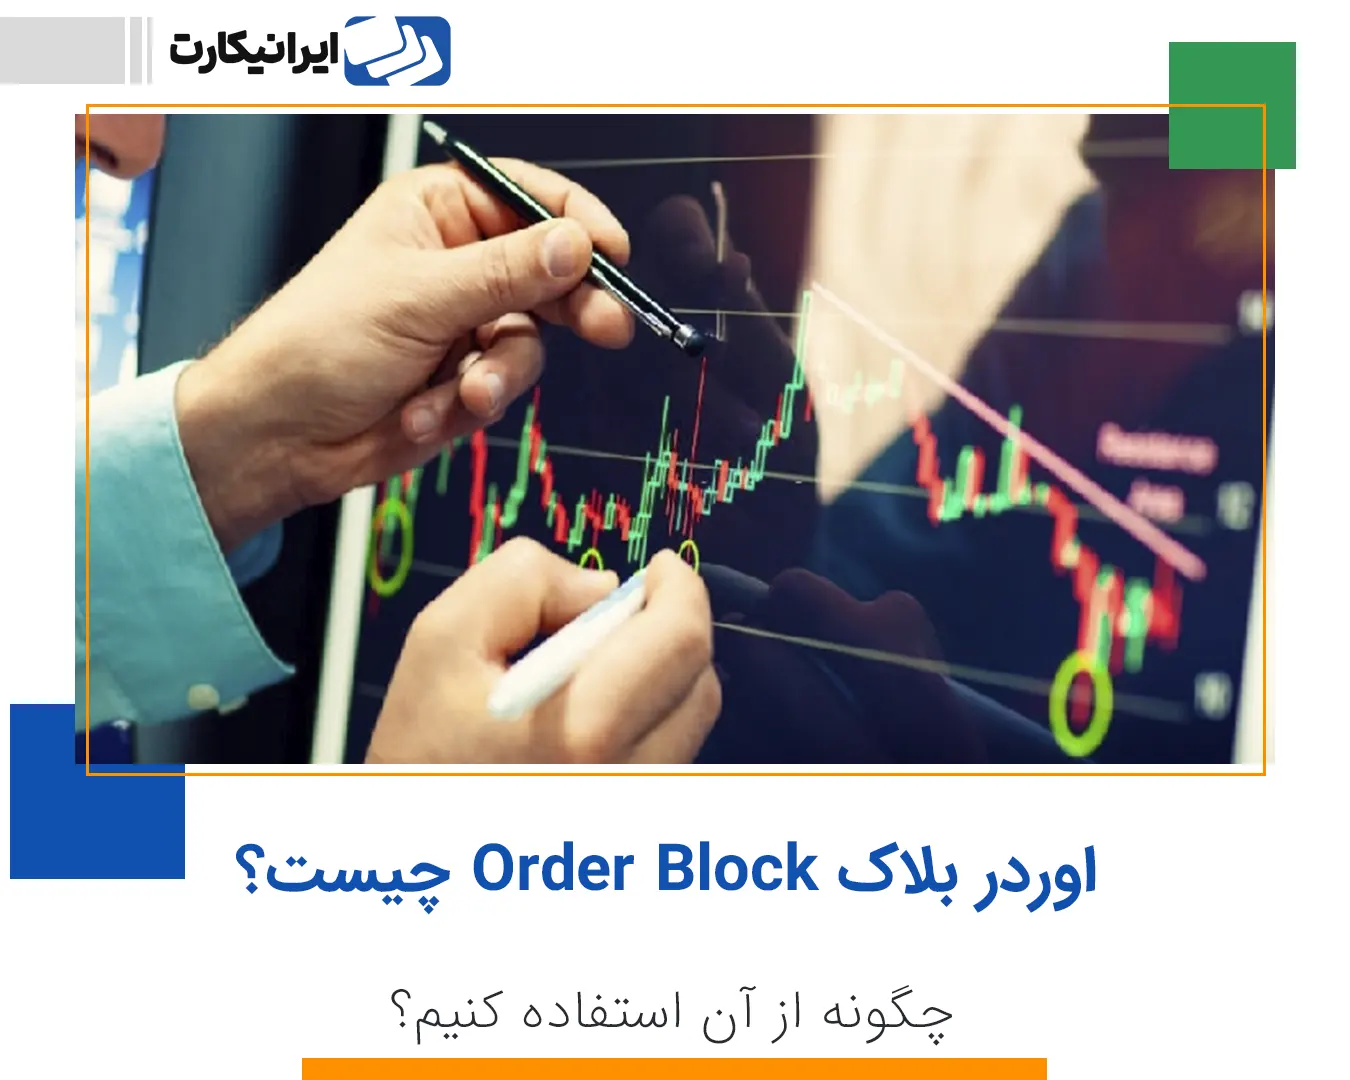 اوردر بلاک order block چیست؟ چگونه از آن استفاده کنیم؟